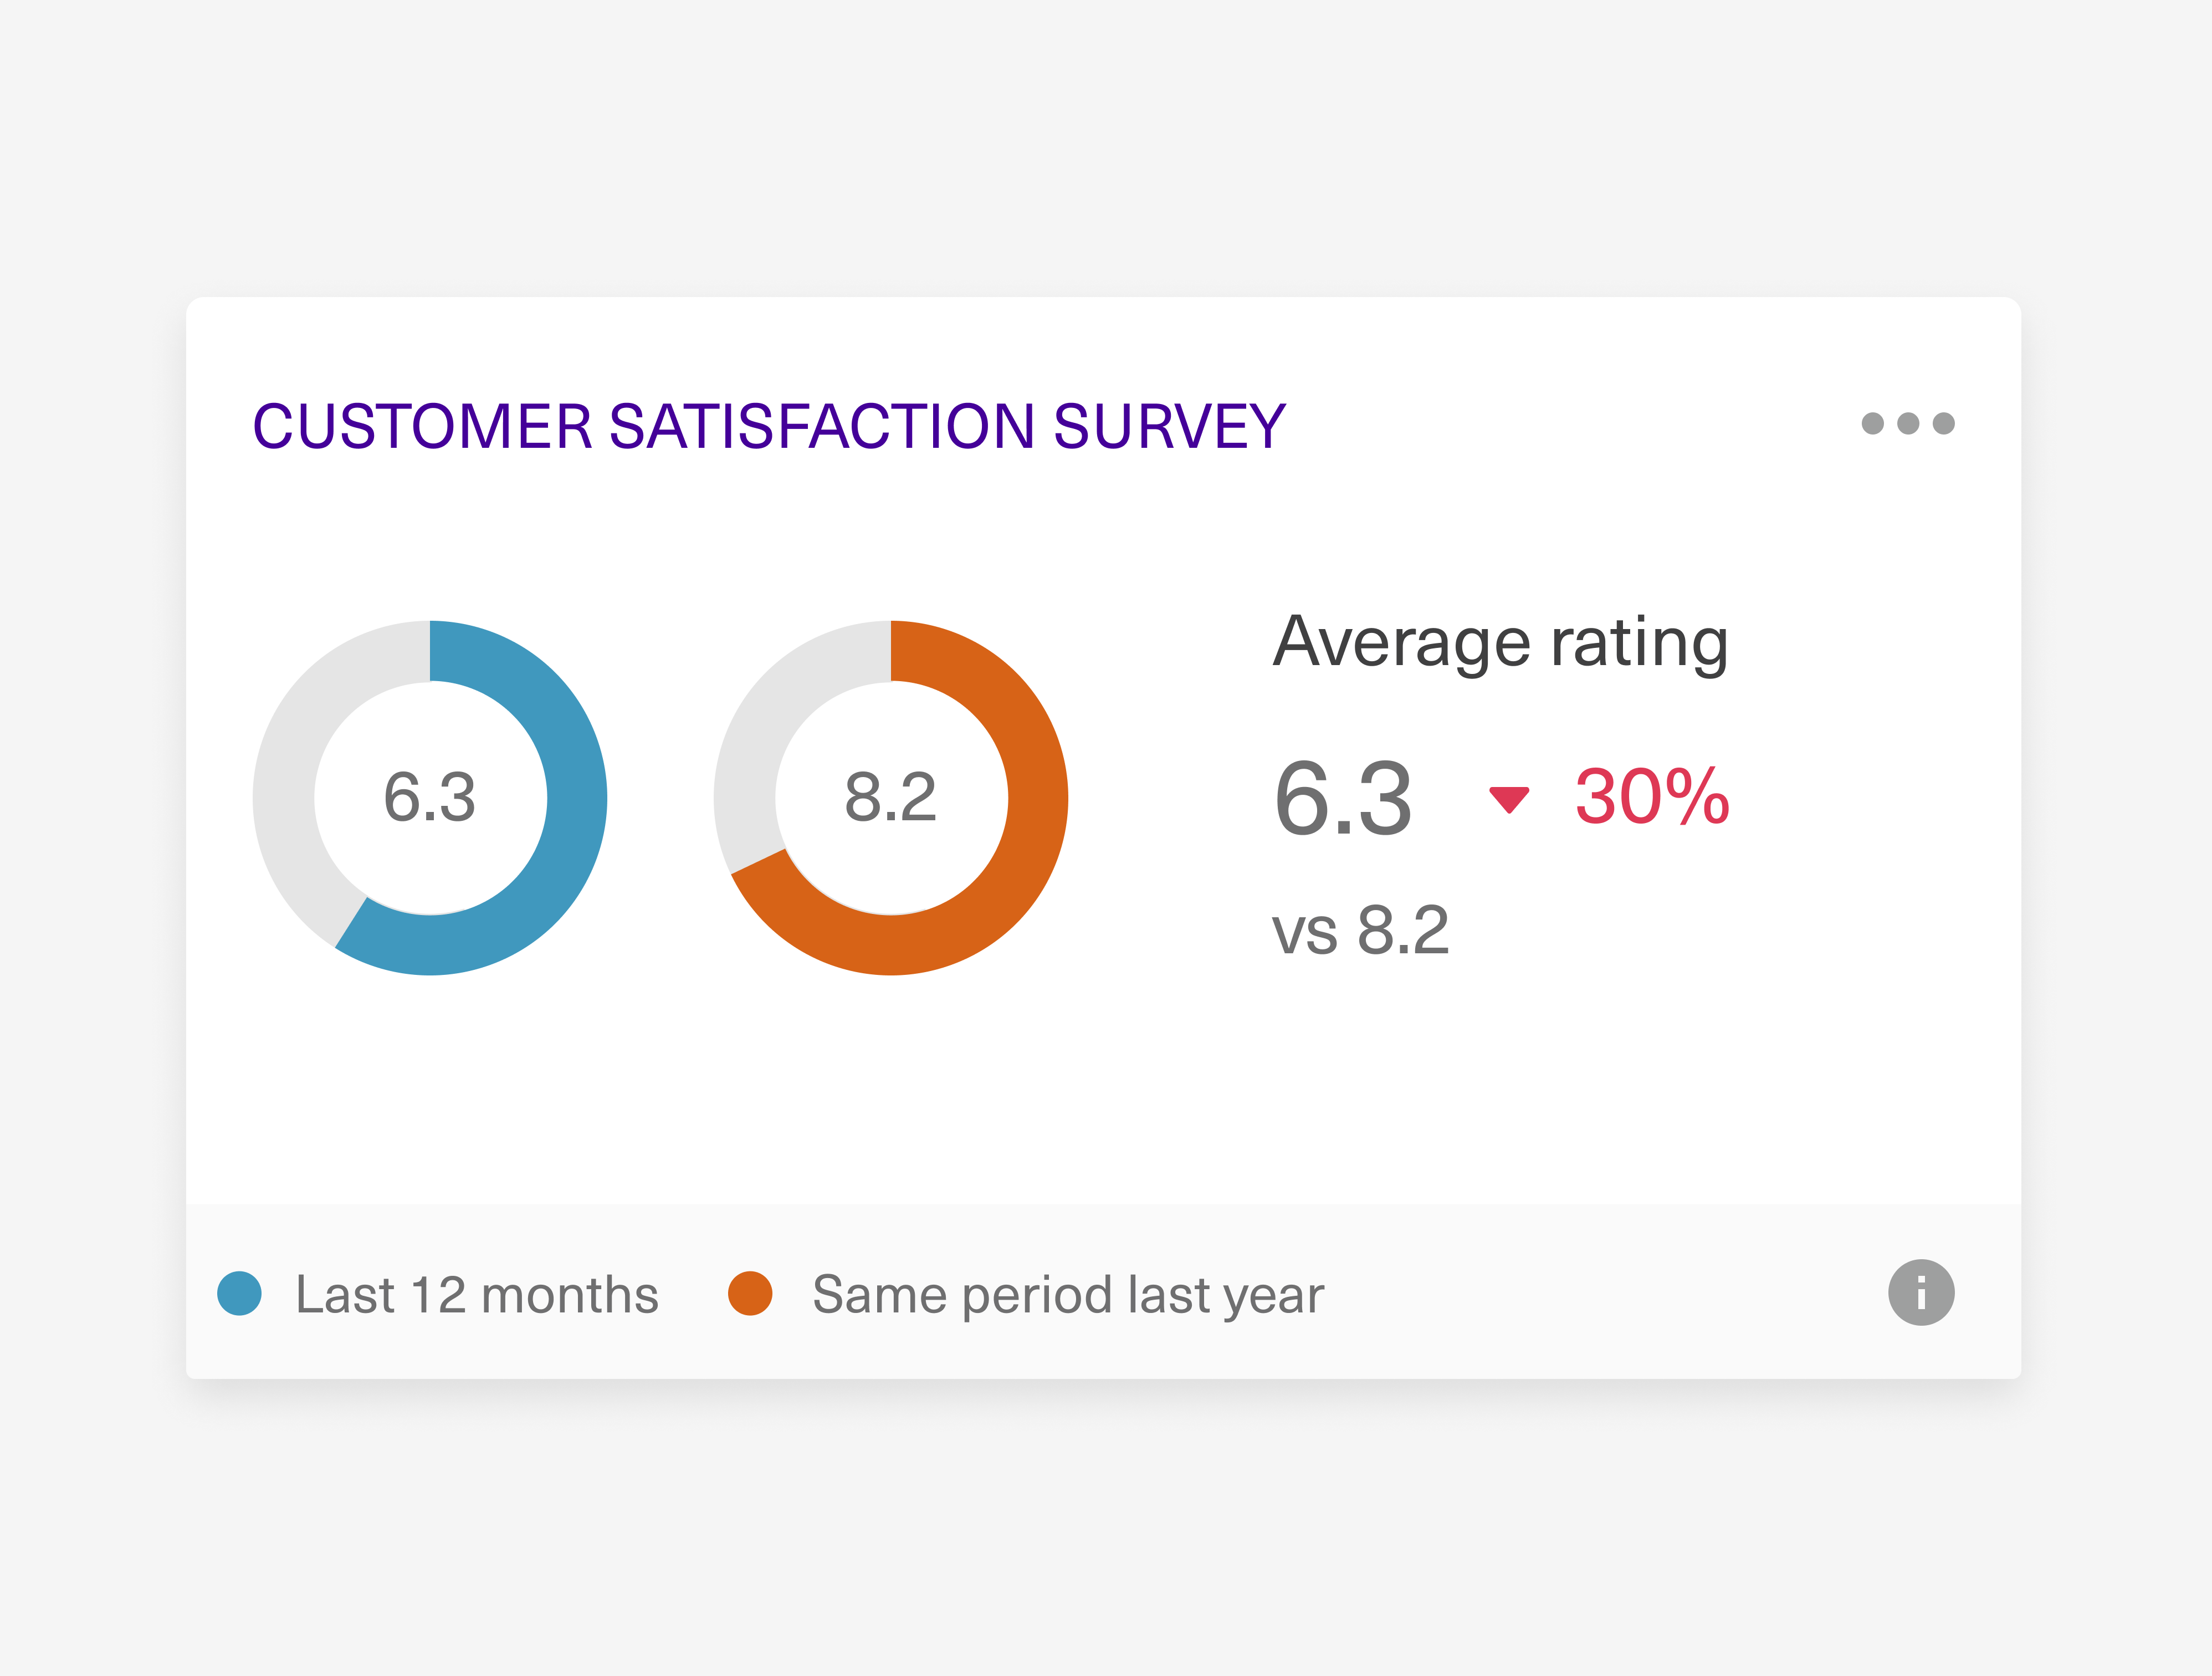 Customer satisfaction data